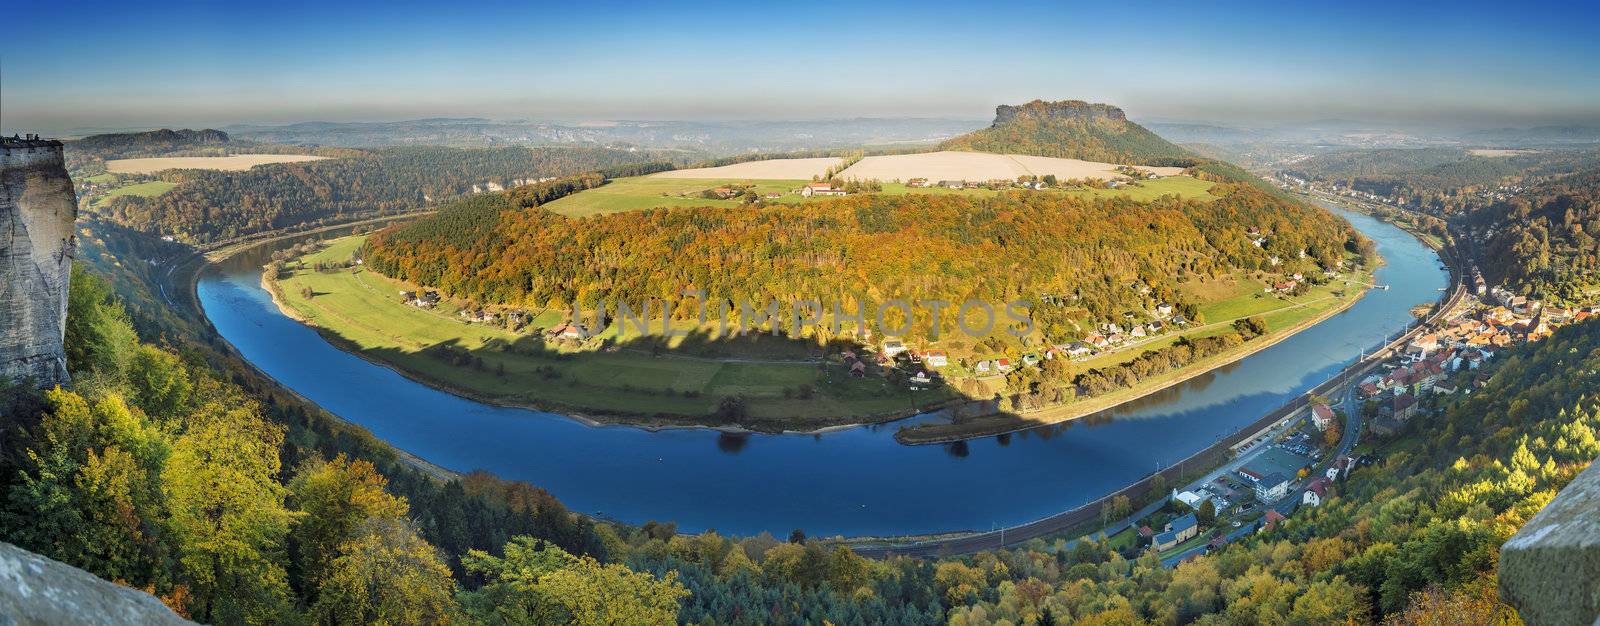 Panorama Saxony Switzerland by w20er